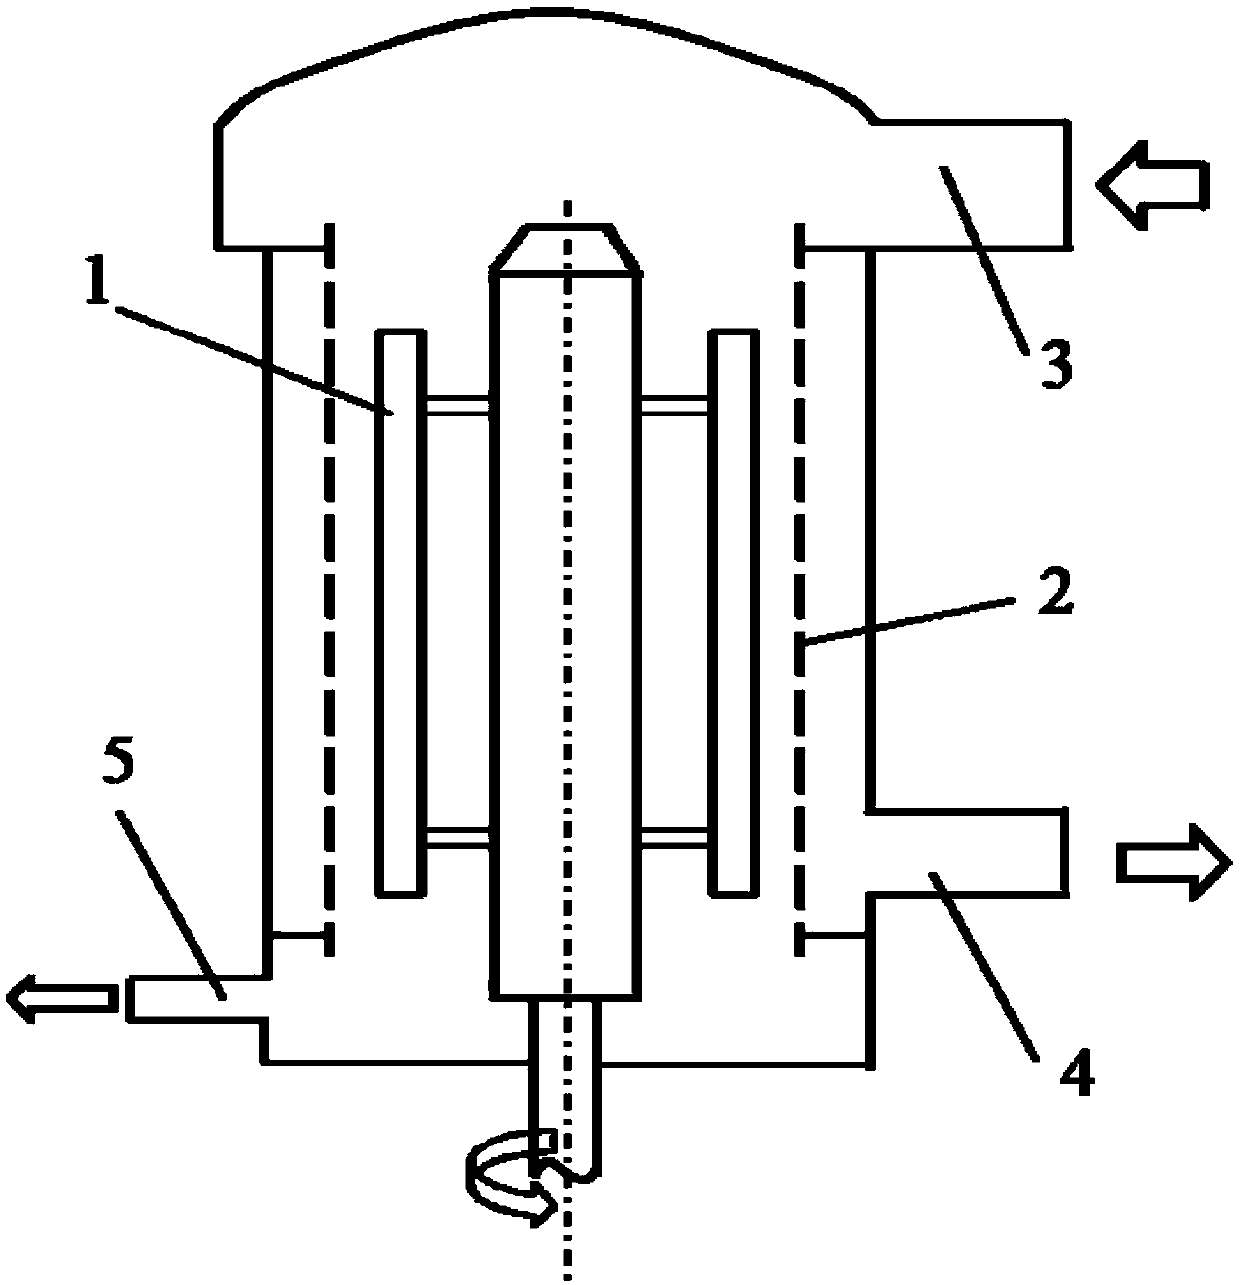 A pressure screen rotor rotor